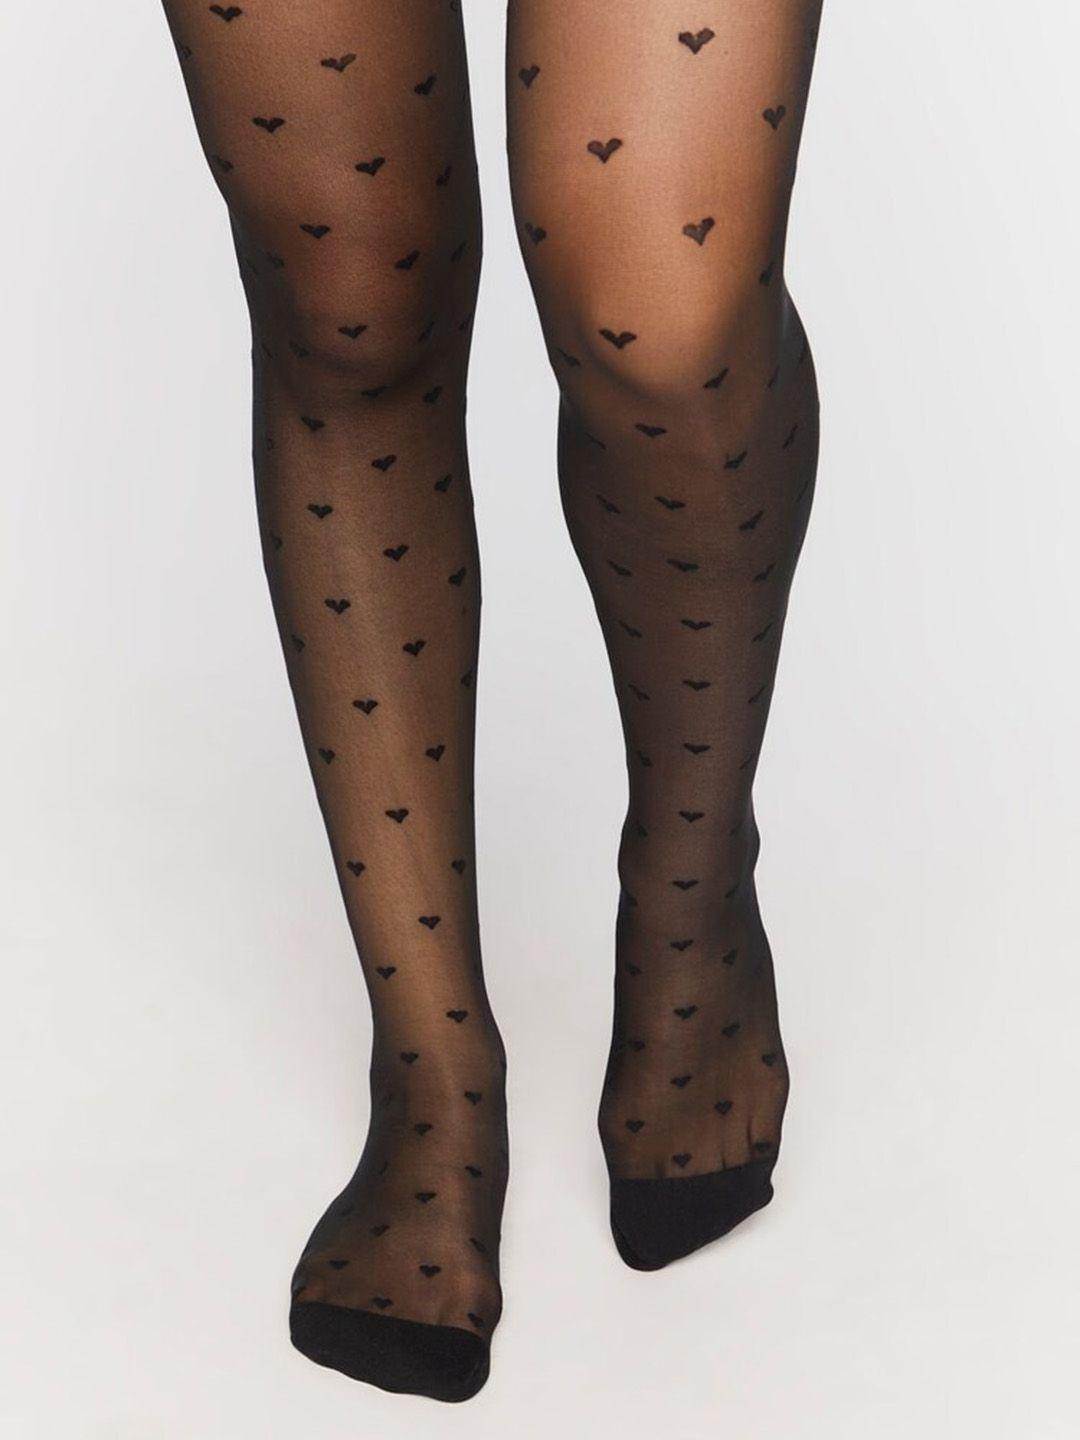 forever-21-self-design-hosiery-stockings